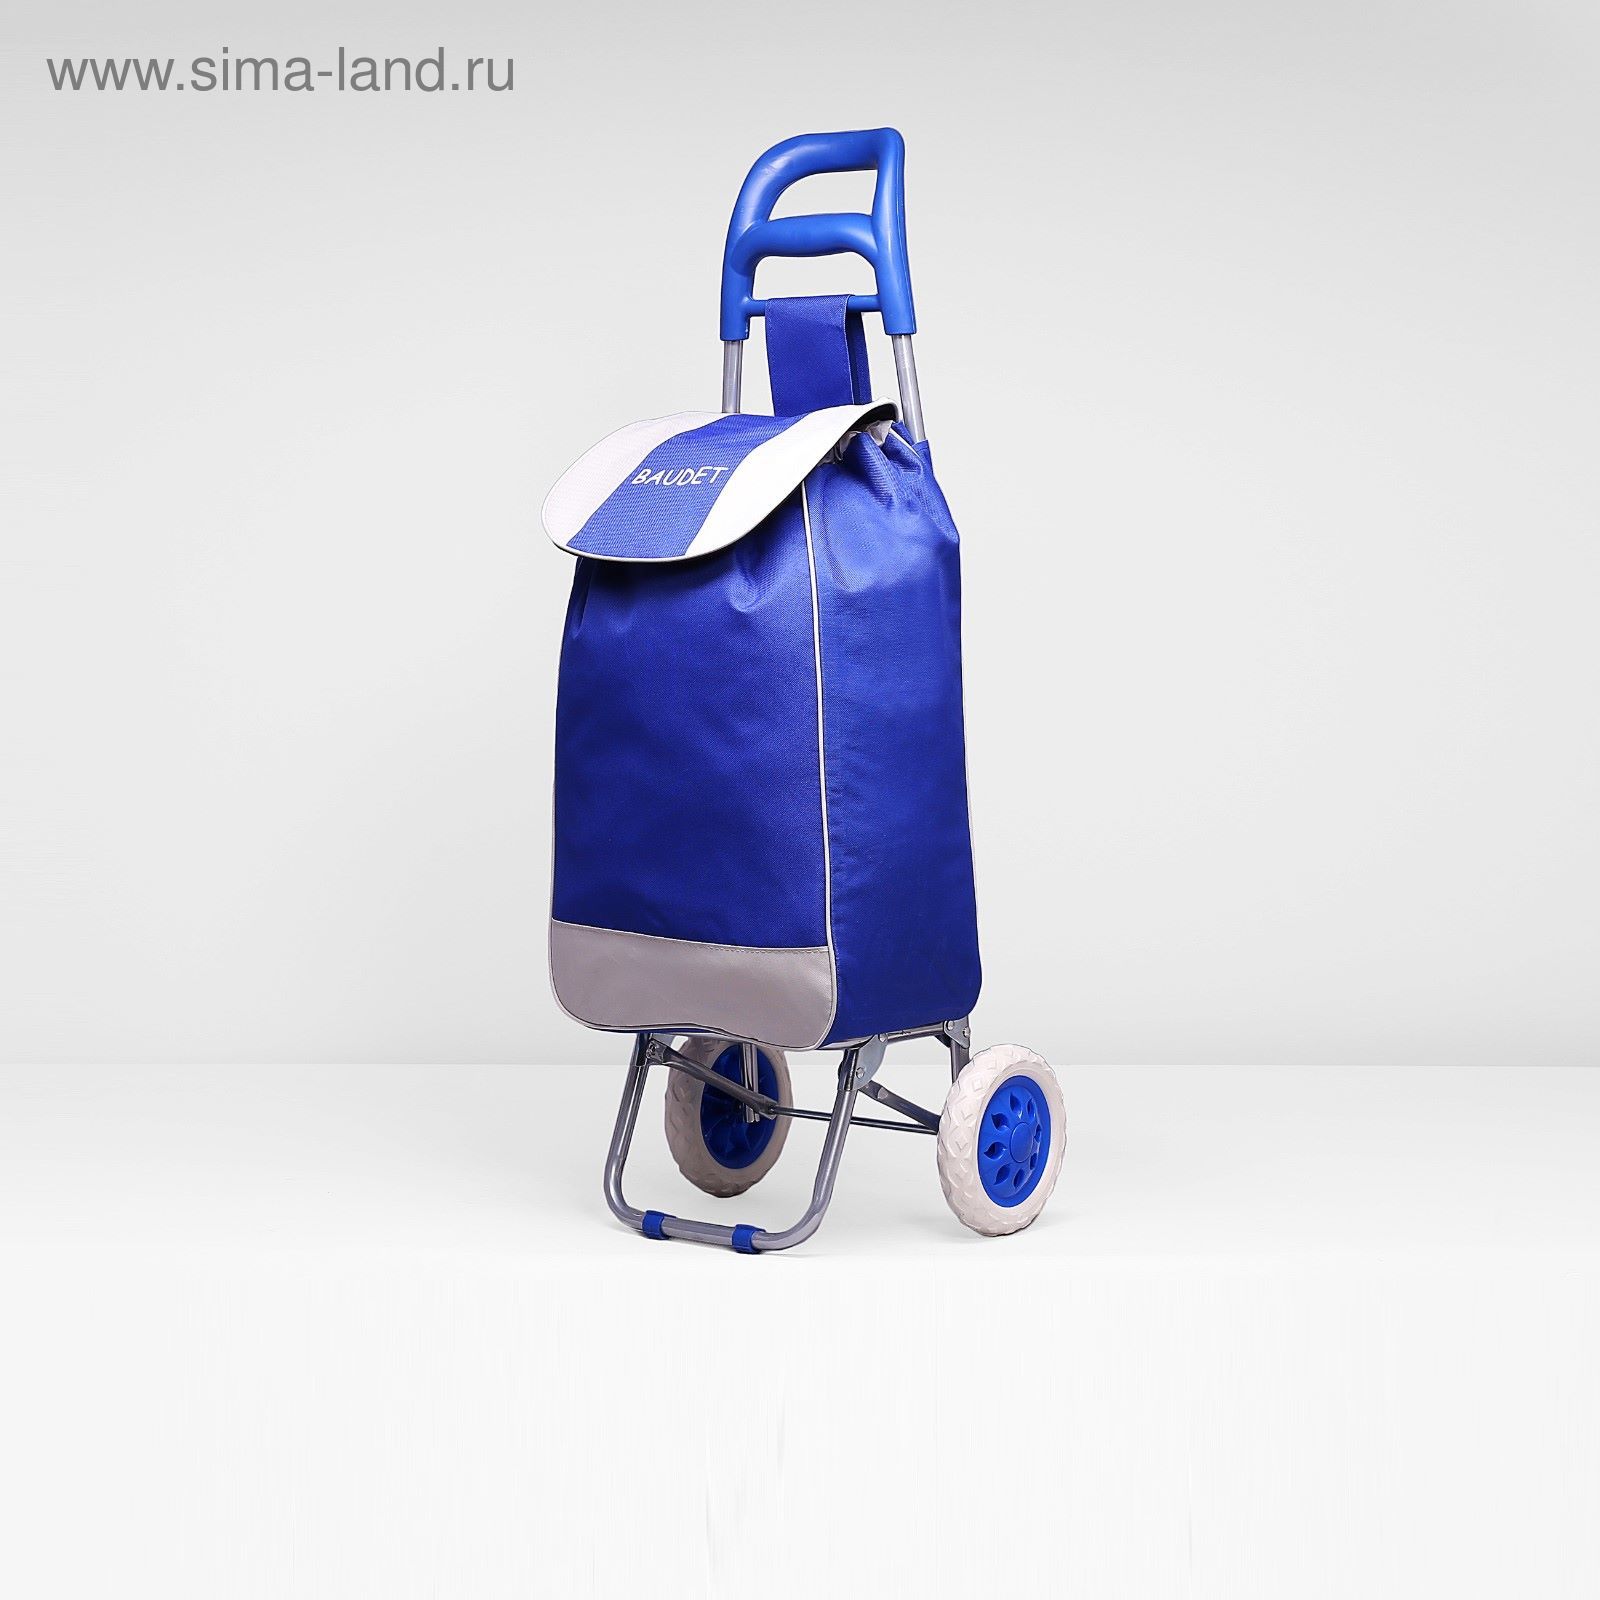 NKSH/B сумка хозяйственная на колёсах СХ 1/С синяя